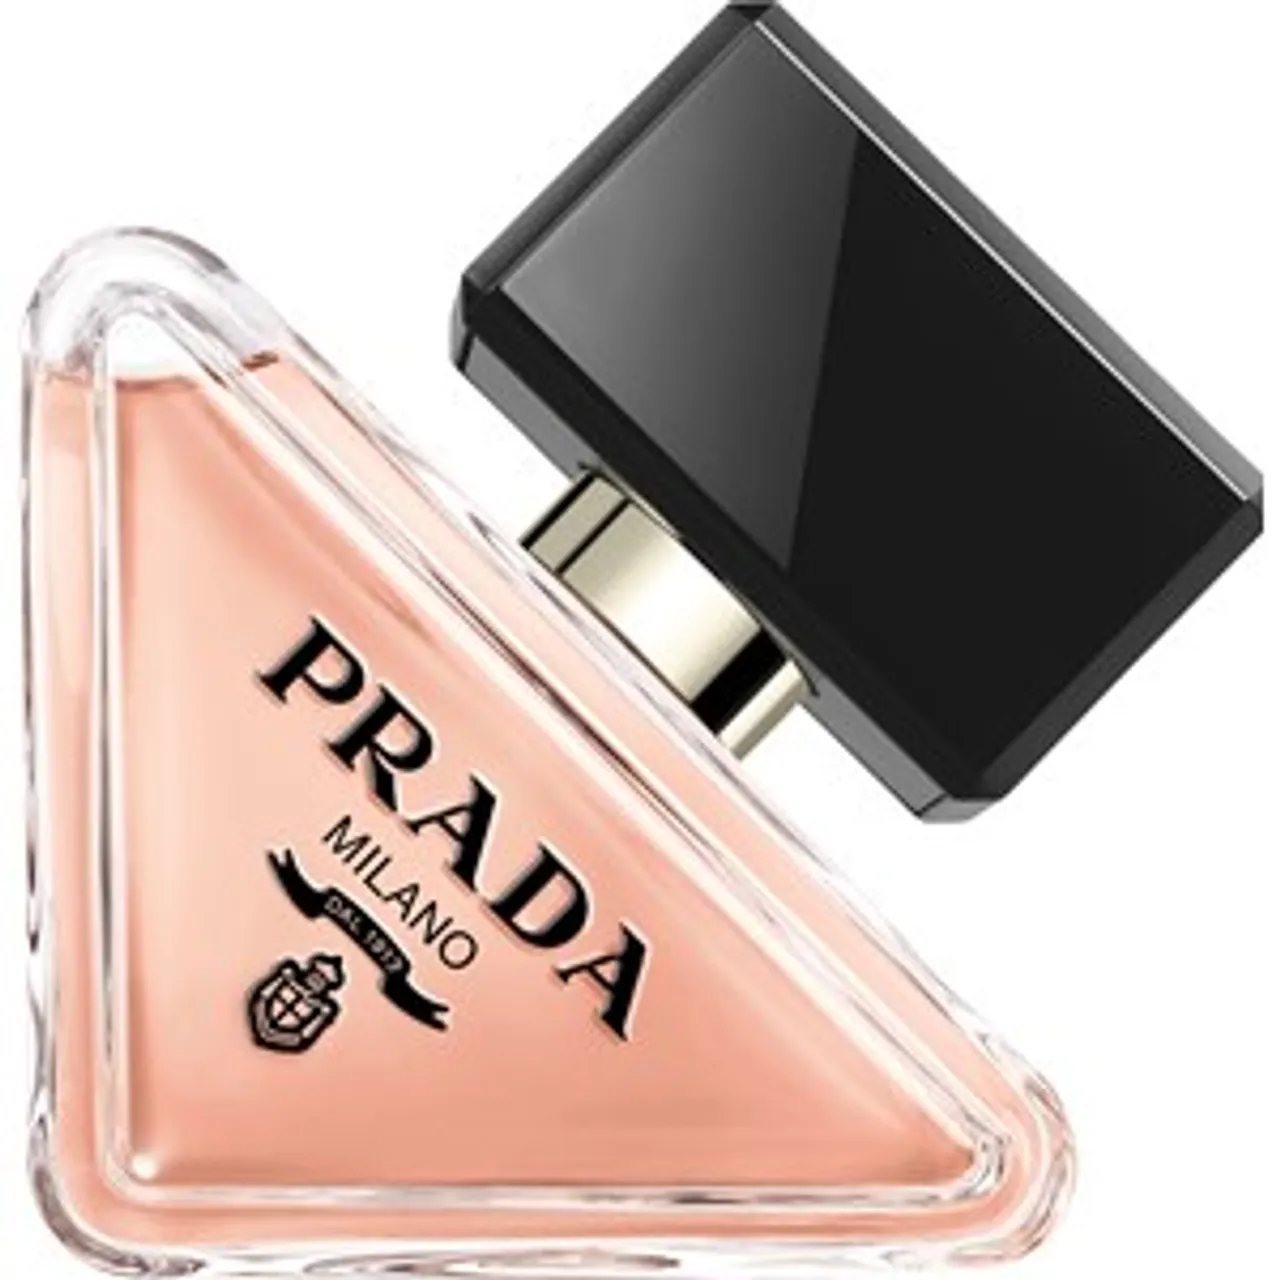 Prada Eau de Parfum Spray - refillable Female 50 ml